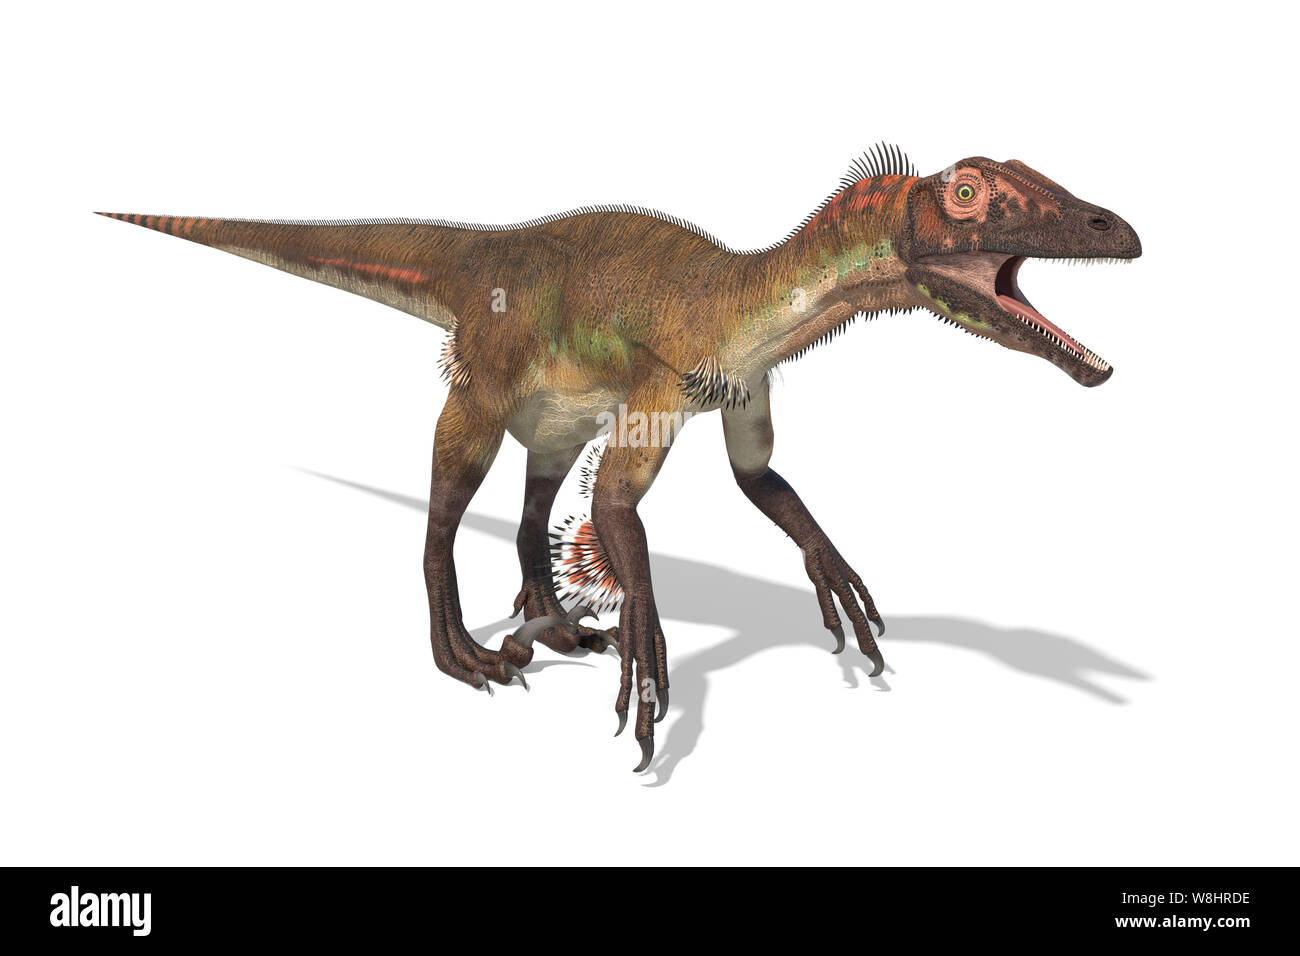 Dinosauro Utahraptor contro uno sfondo bianco, illustrazione. Questi dinosauri vivevano durante l'inizio del periodo Cretaceo, circa 126 milioni di anni fa. Foto Stock